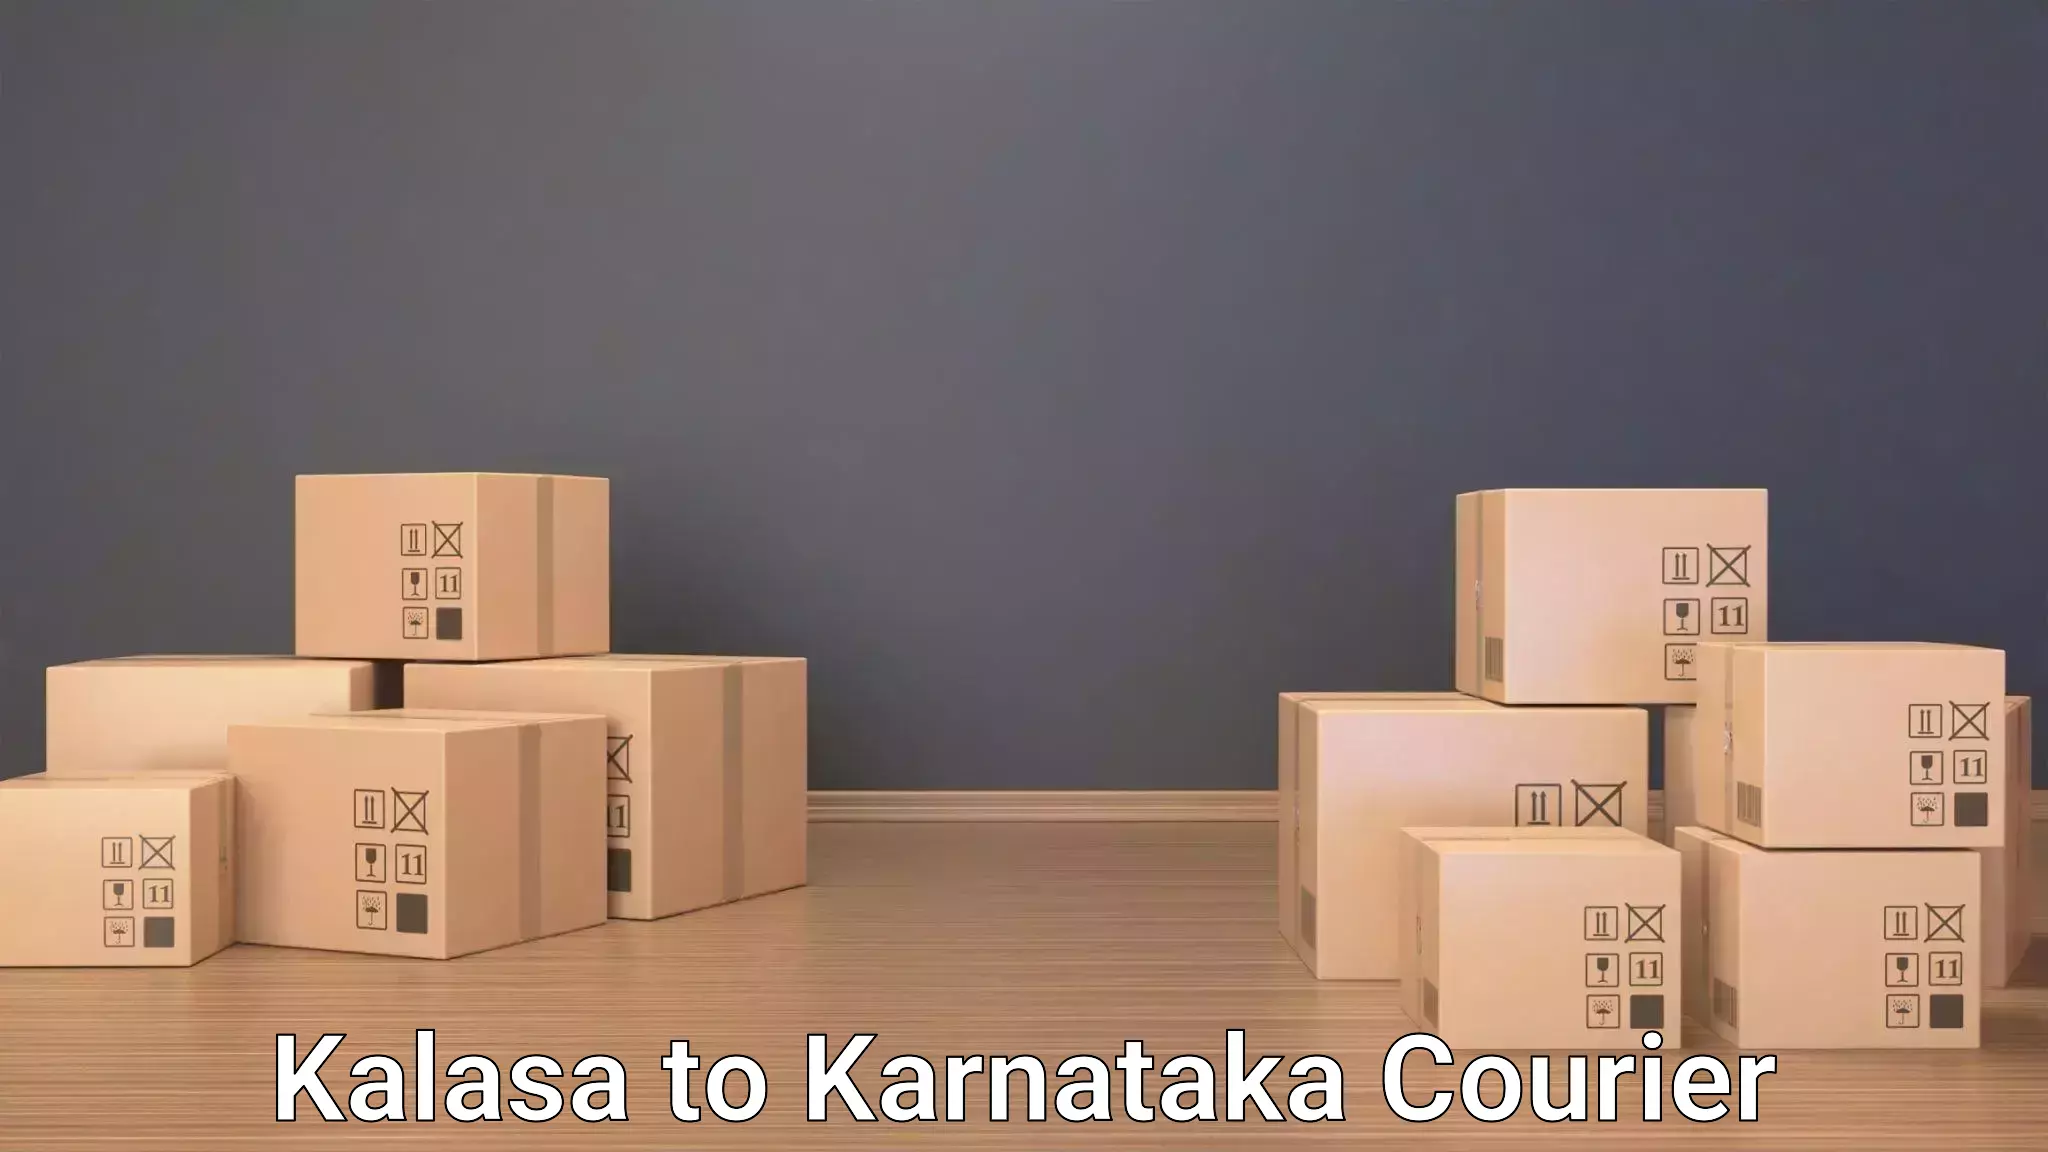 Baggage transport network Kalasa to Kanjarakatte